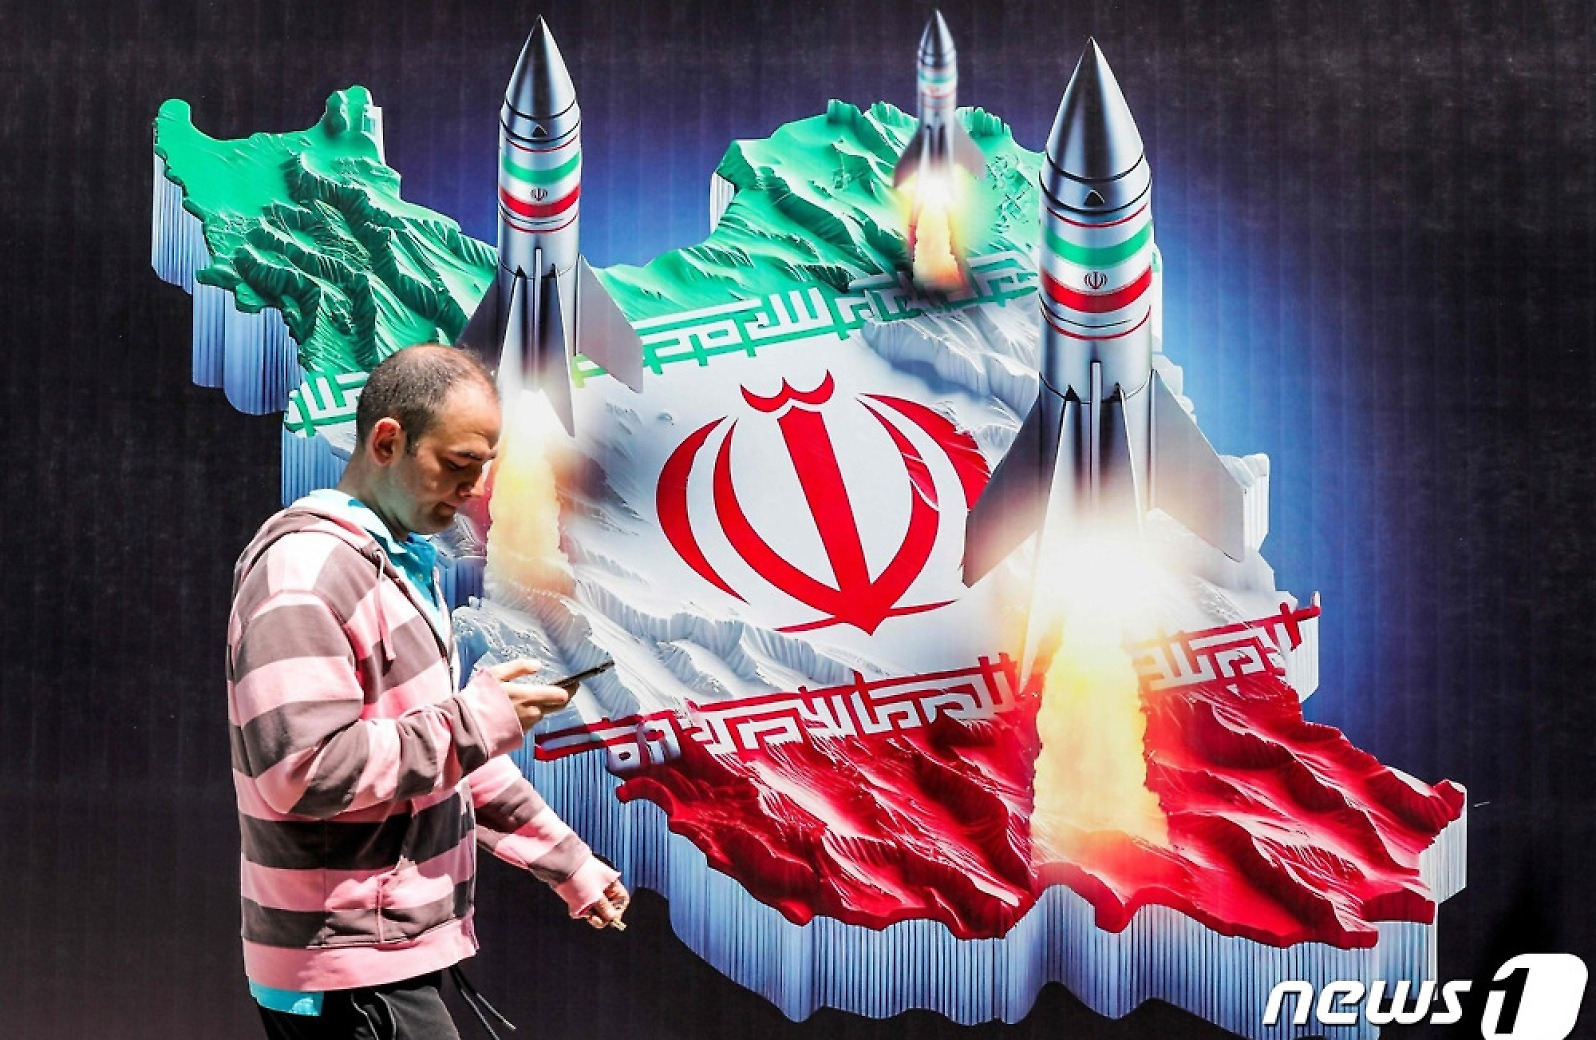 [포토] 이란과 미사일 그려진 벽화 앞 지나가는 남성